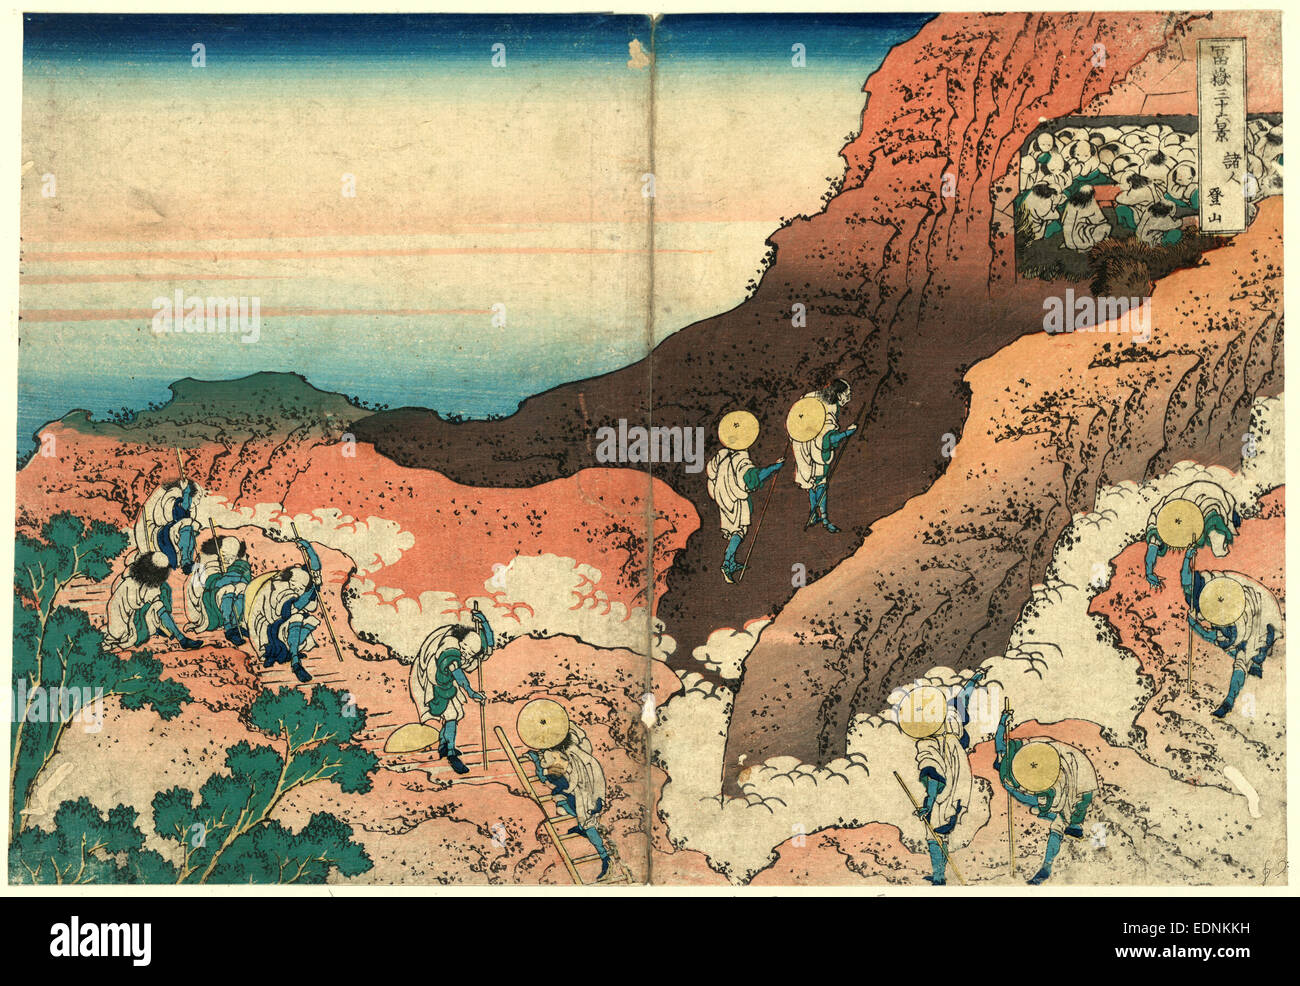 Shonin Tozan, Pilger klettern., Katsushika Hokusai, 1760-1849, Künstler, 1834., 1 print: Holzschnitt, Farbe; 24,2 x 35,6 cm., zeigt Print Pilger in Richtung einer Berghöhle gefüllt mit Mönchen klettern. Stockfoto